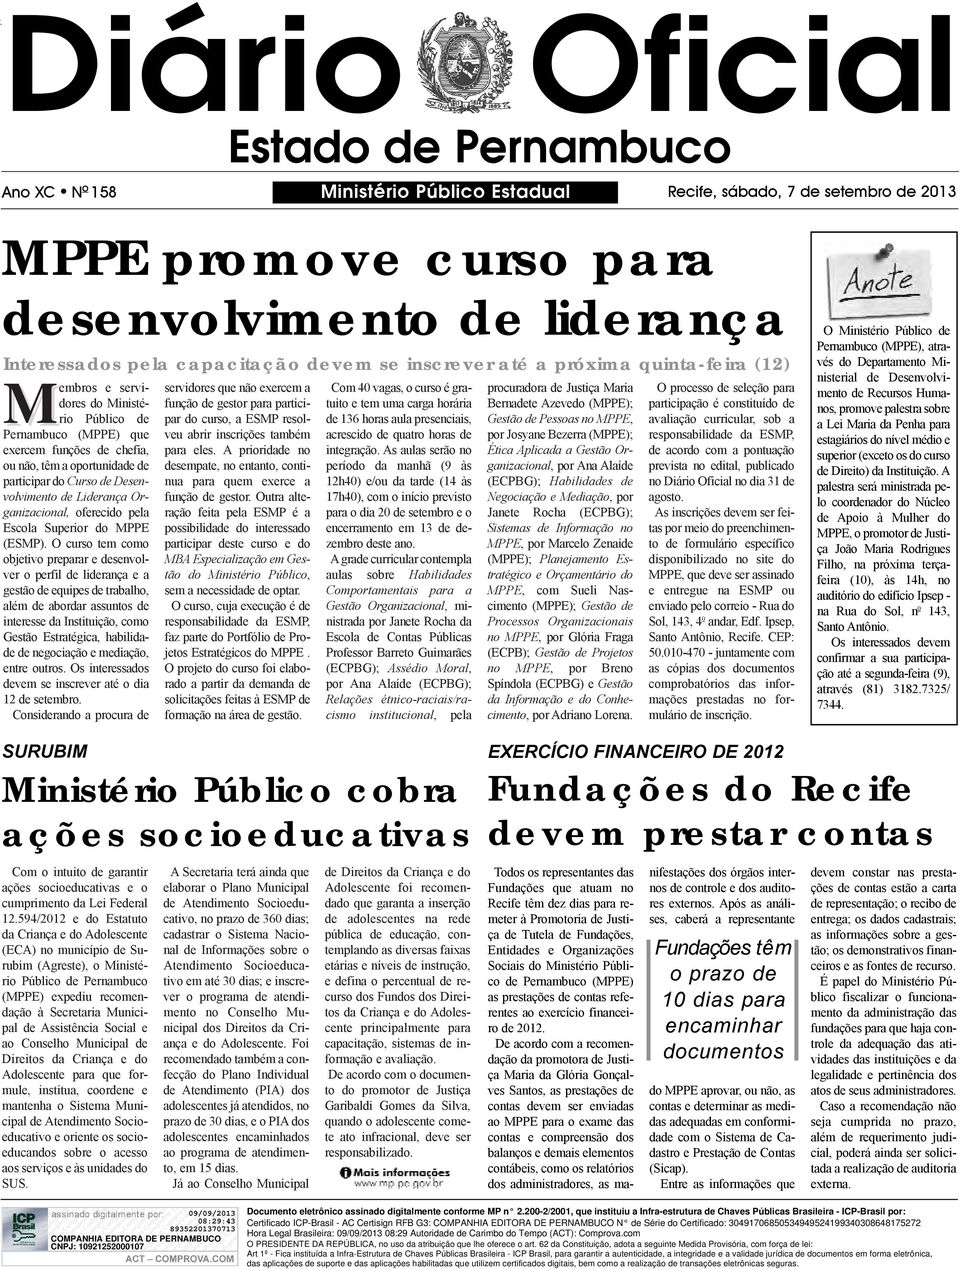 Desenvolvimento de Liderança Organizacional, oferecido pela Escola Superior do MPPE (ESMP).